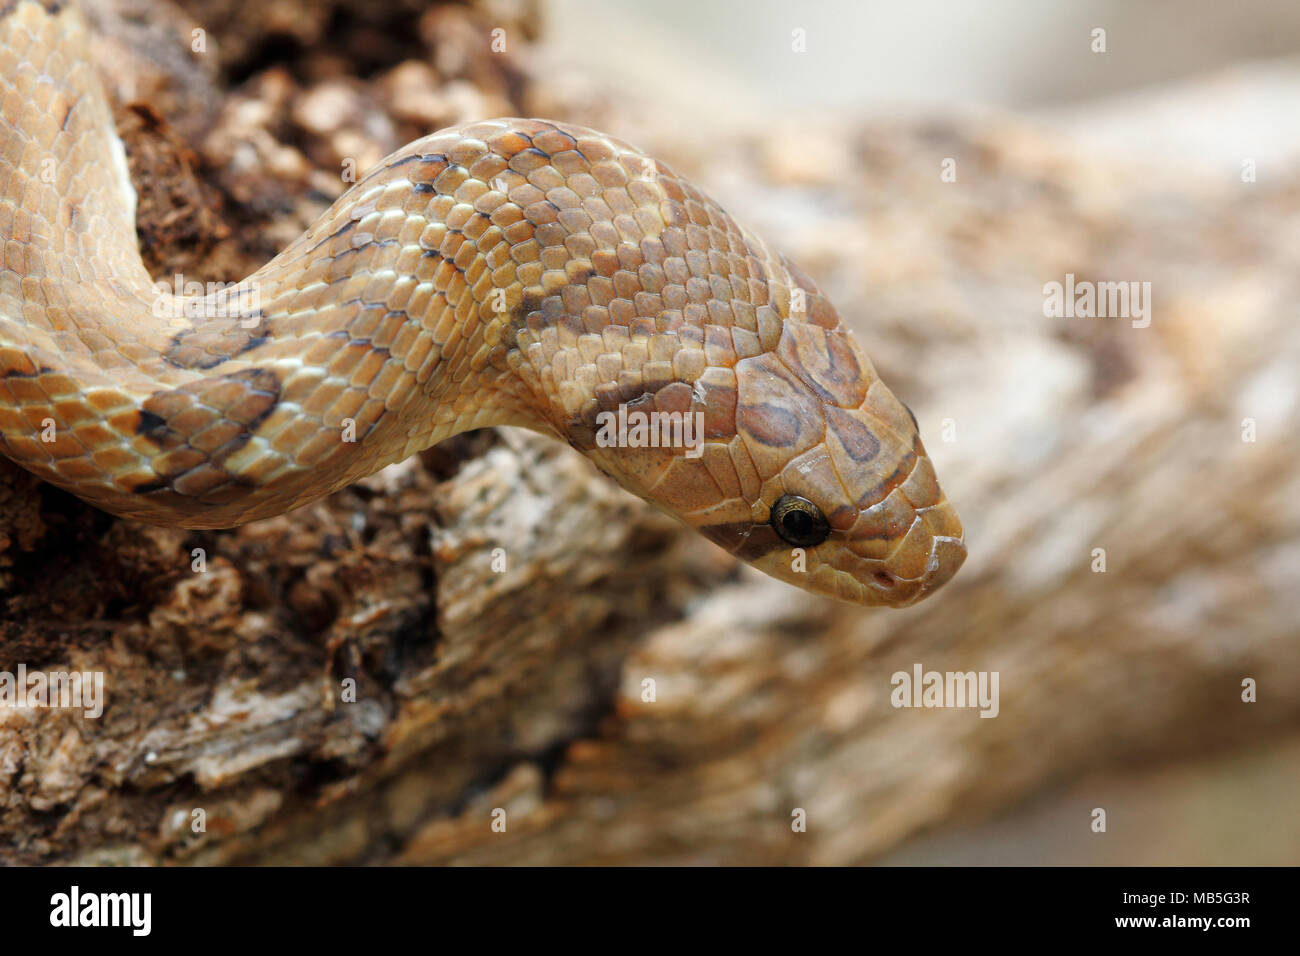 Disparo a la cabeza bandas Oligodon fasciolatus kukri (serpiente) un no-serpiente venenosa pero tienen afilados dientes traseros, que se encuentra en el sudeste de Asia Foto de stock